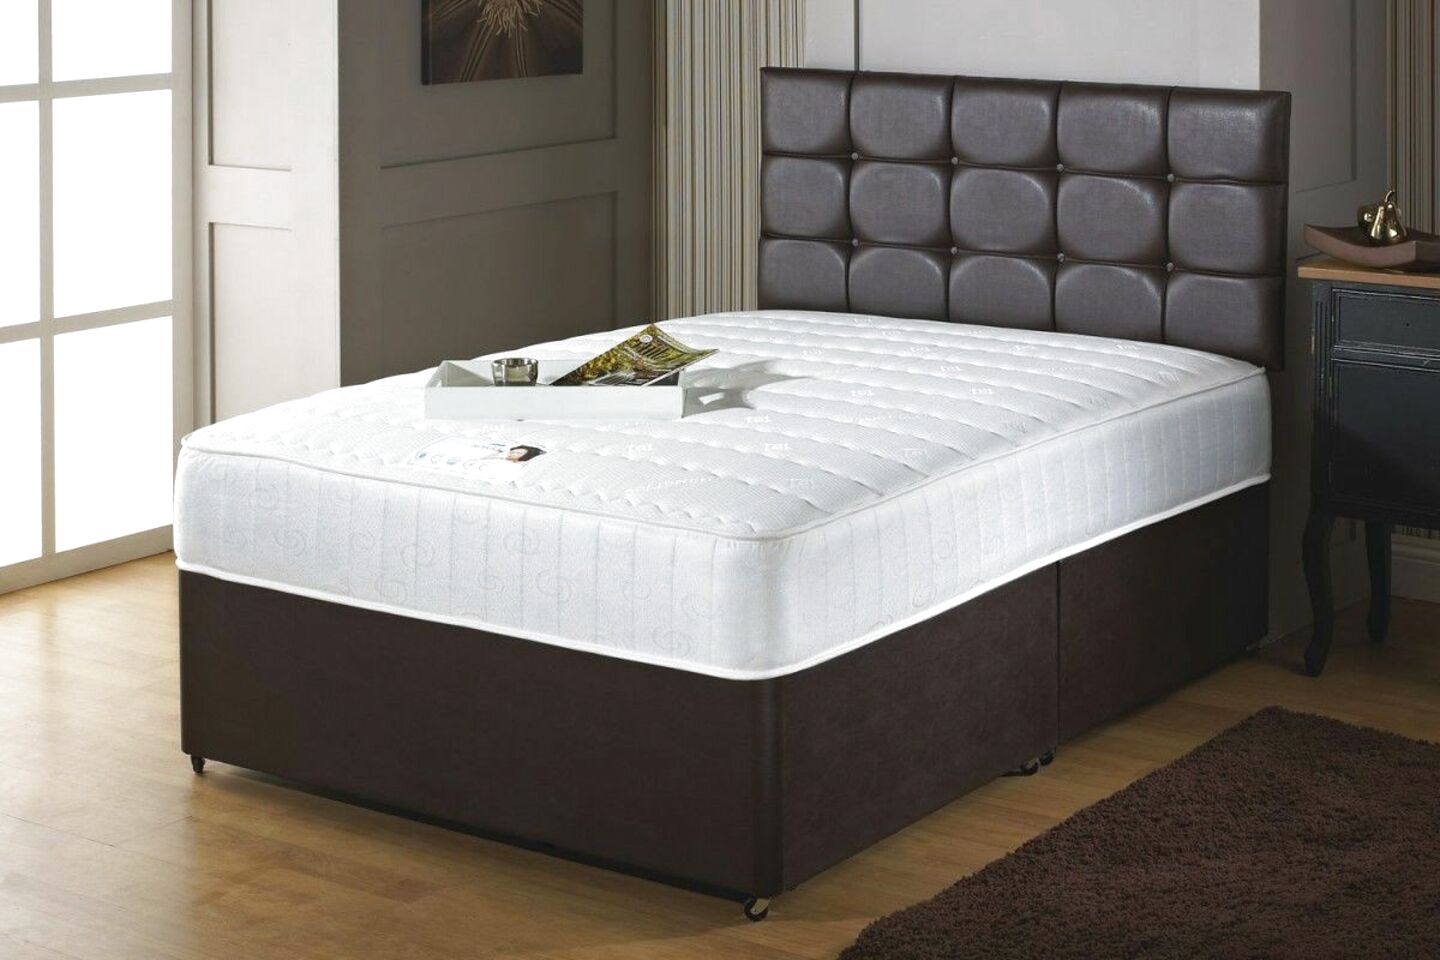 4ft x 6ft bed mattress